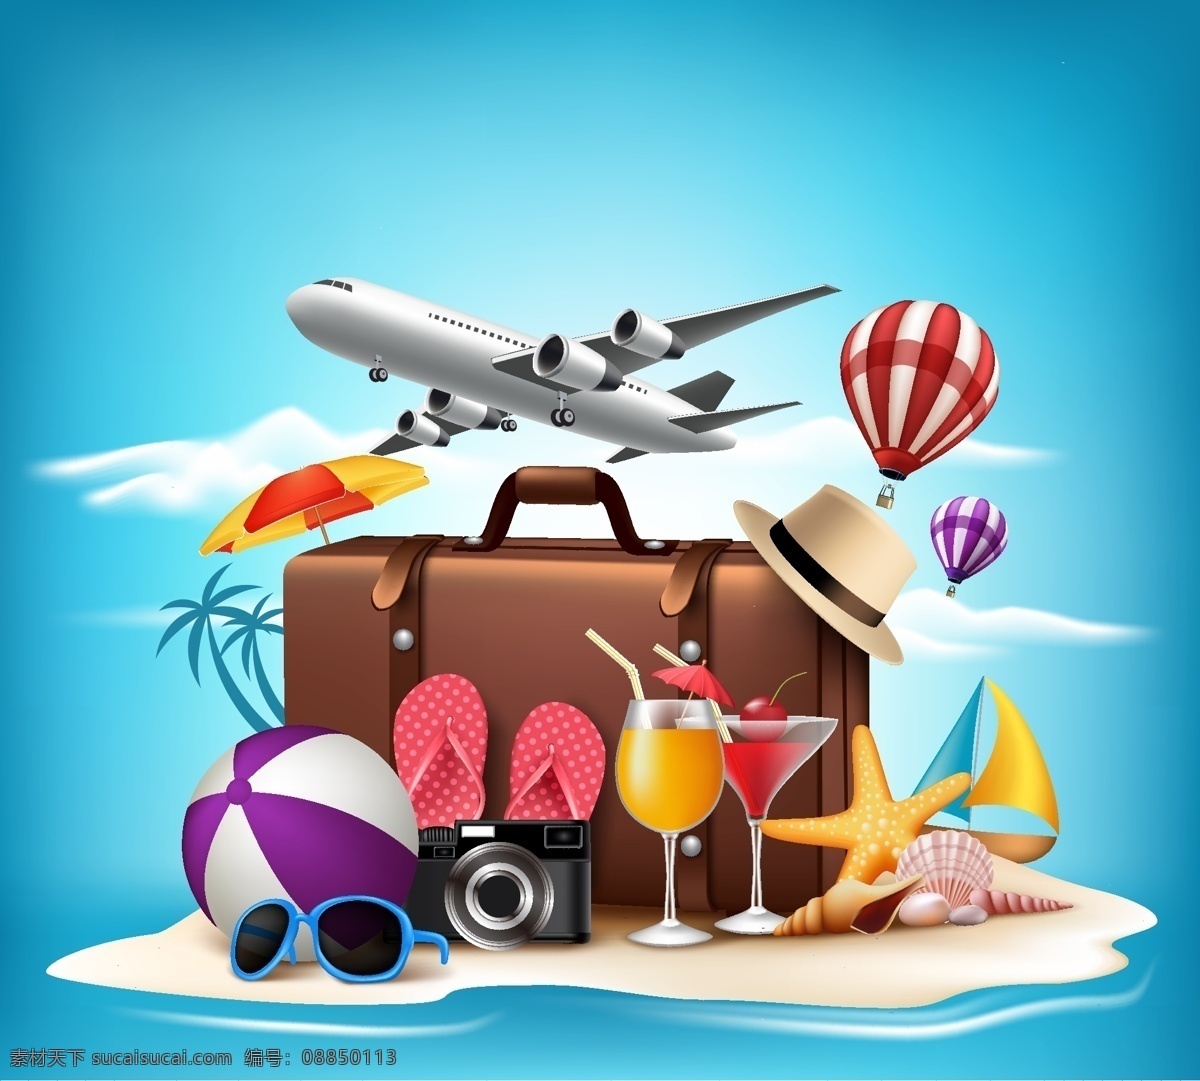 夏天 时尚 旅行 插画 飞机 旅行箱 沙滩 热气球